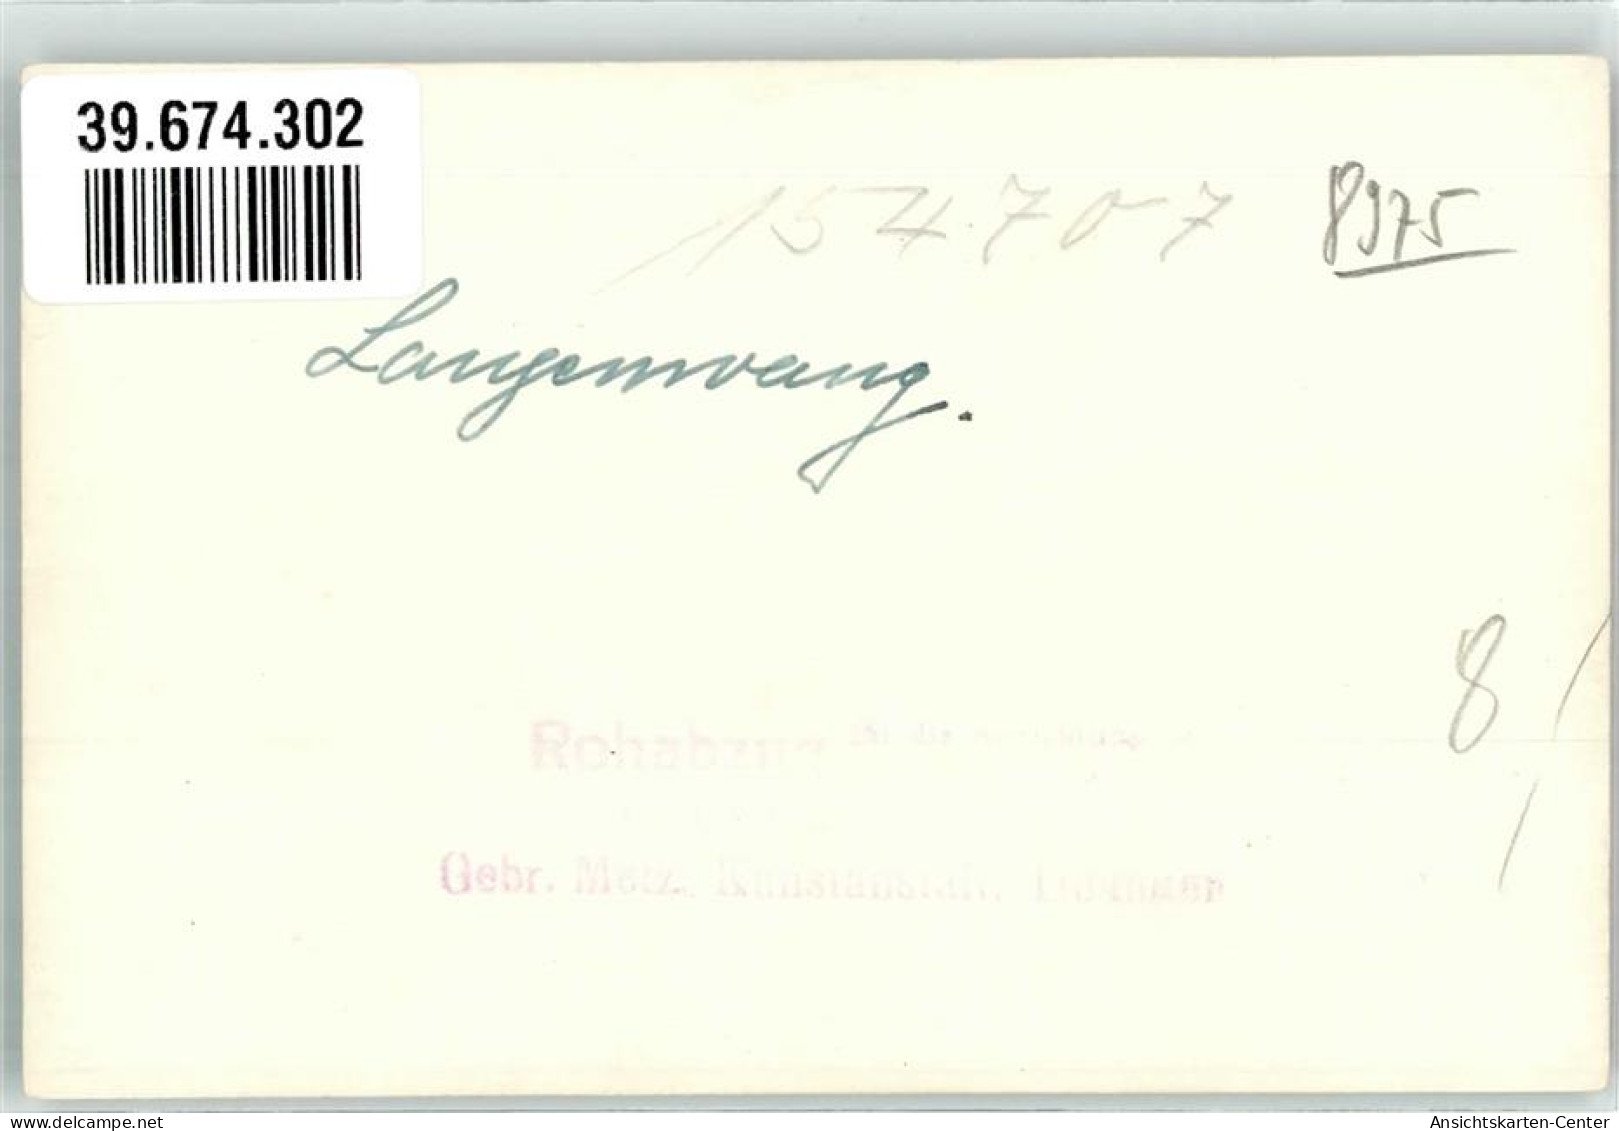 39674302 - Langenwang , Allgaeu - Fischen